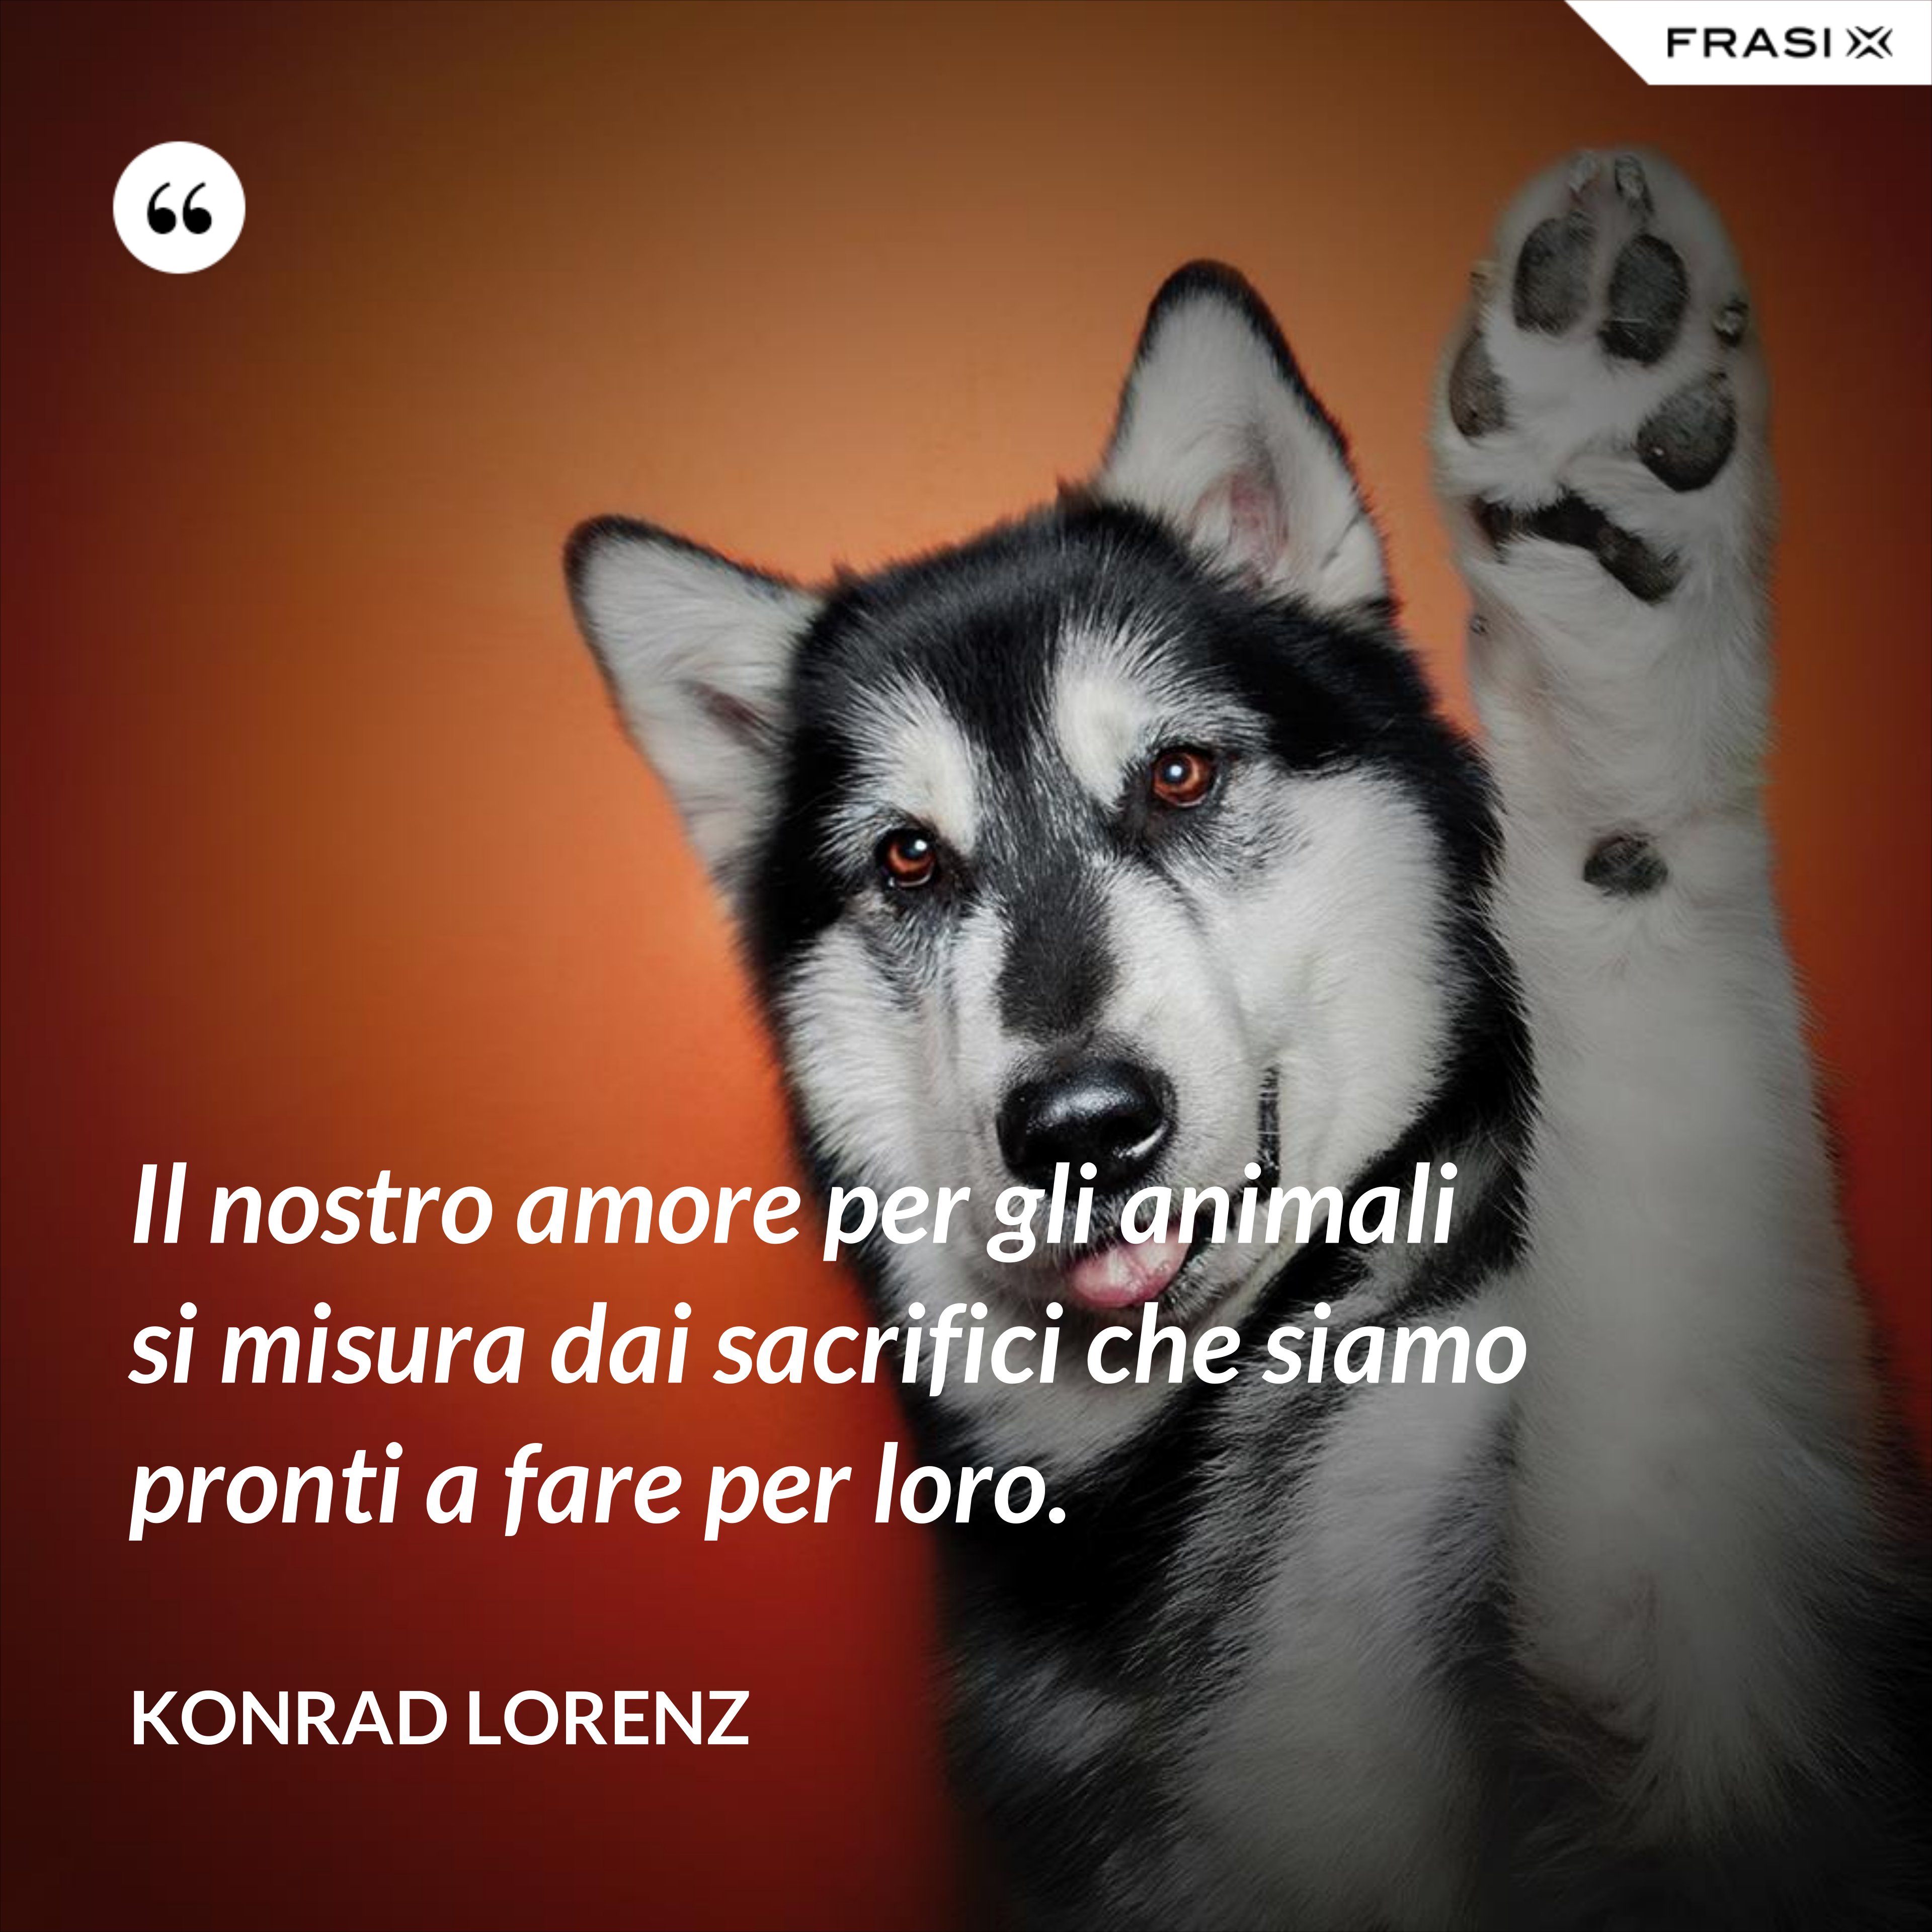 Il nostro amore per gli animali si misura dai sacrifici che siamo pronti a fare per loro. - Konrad Lorenz